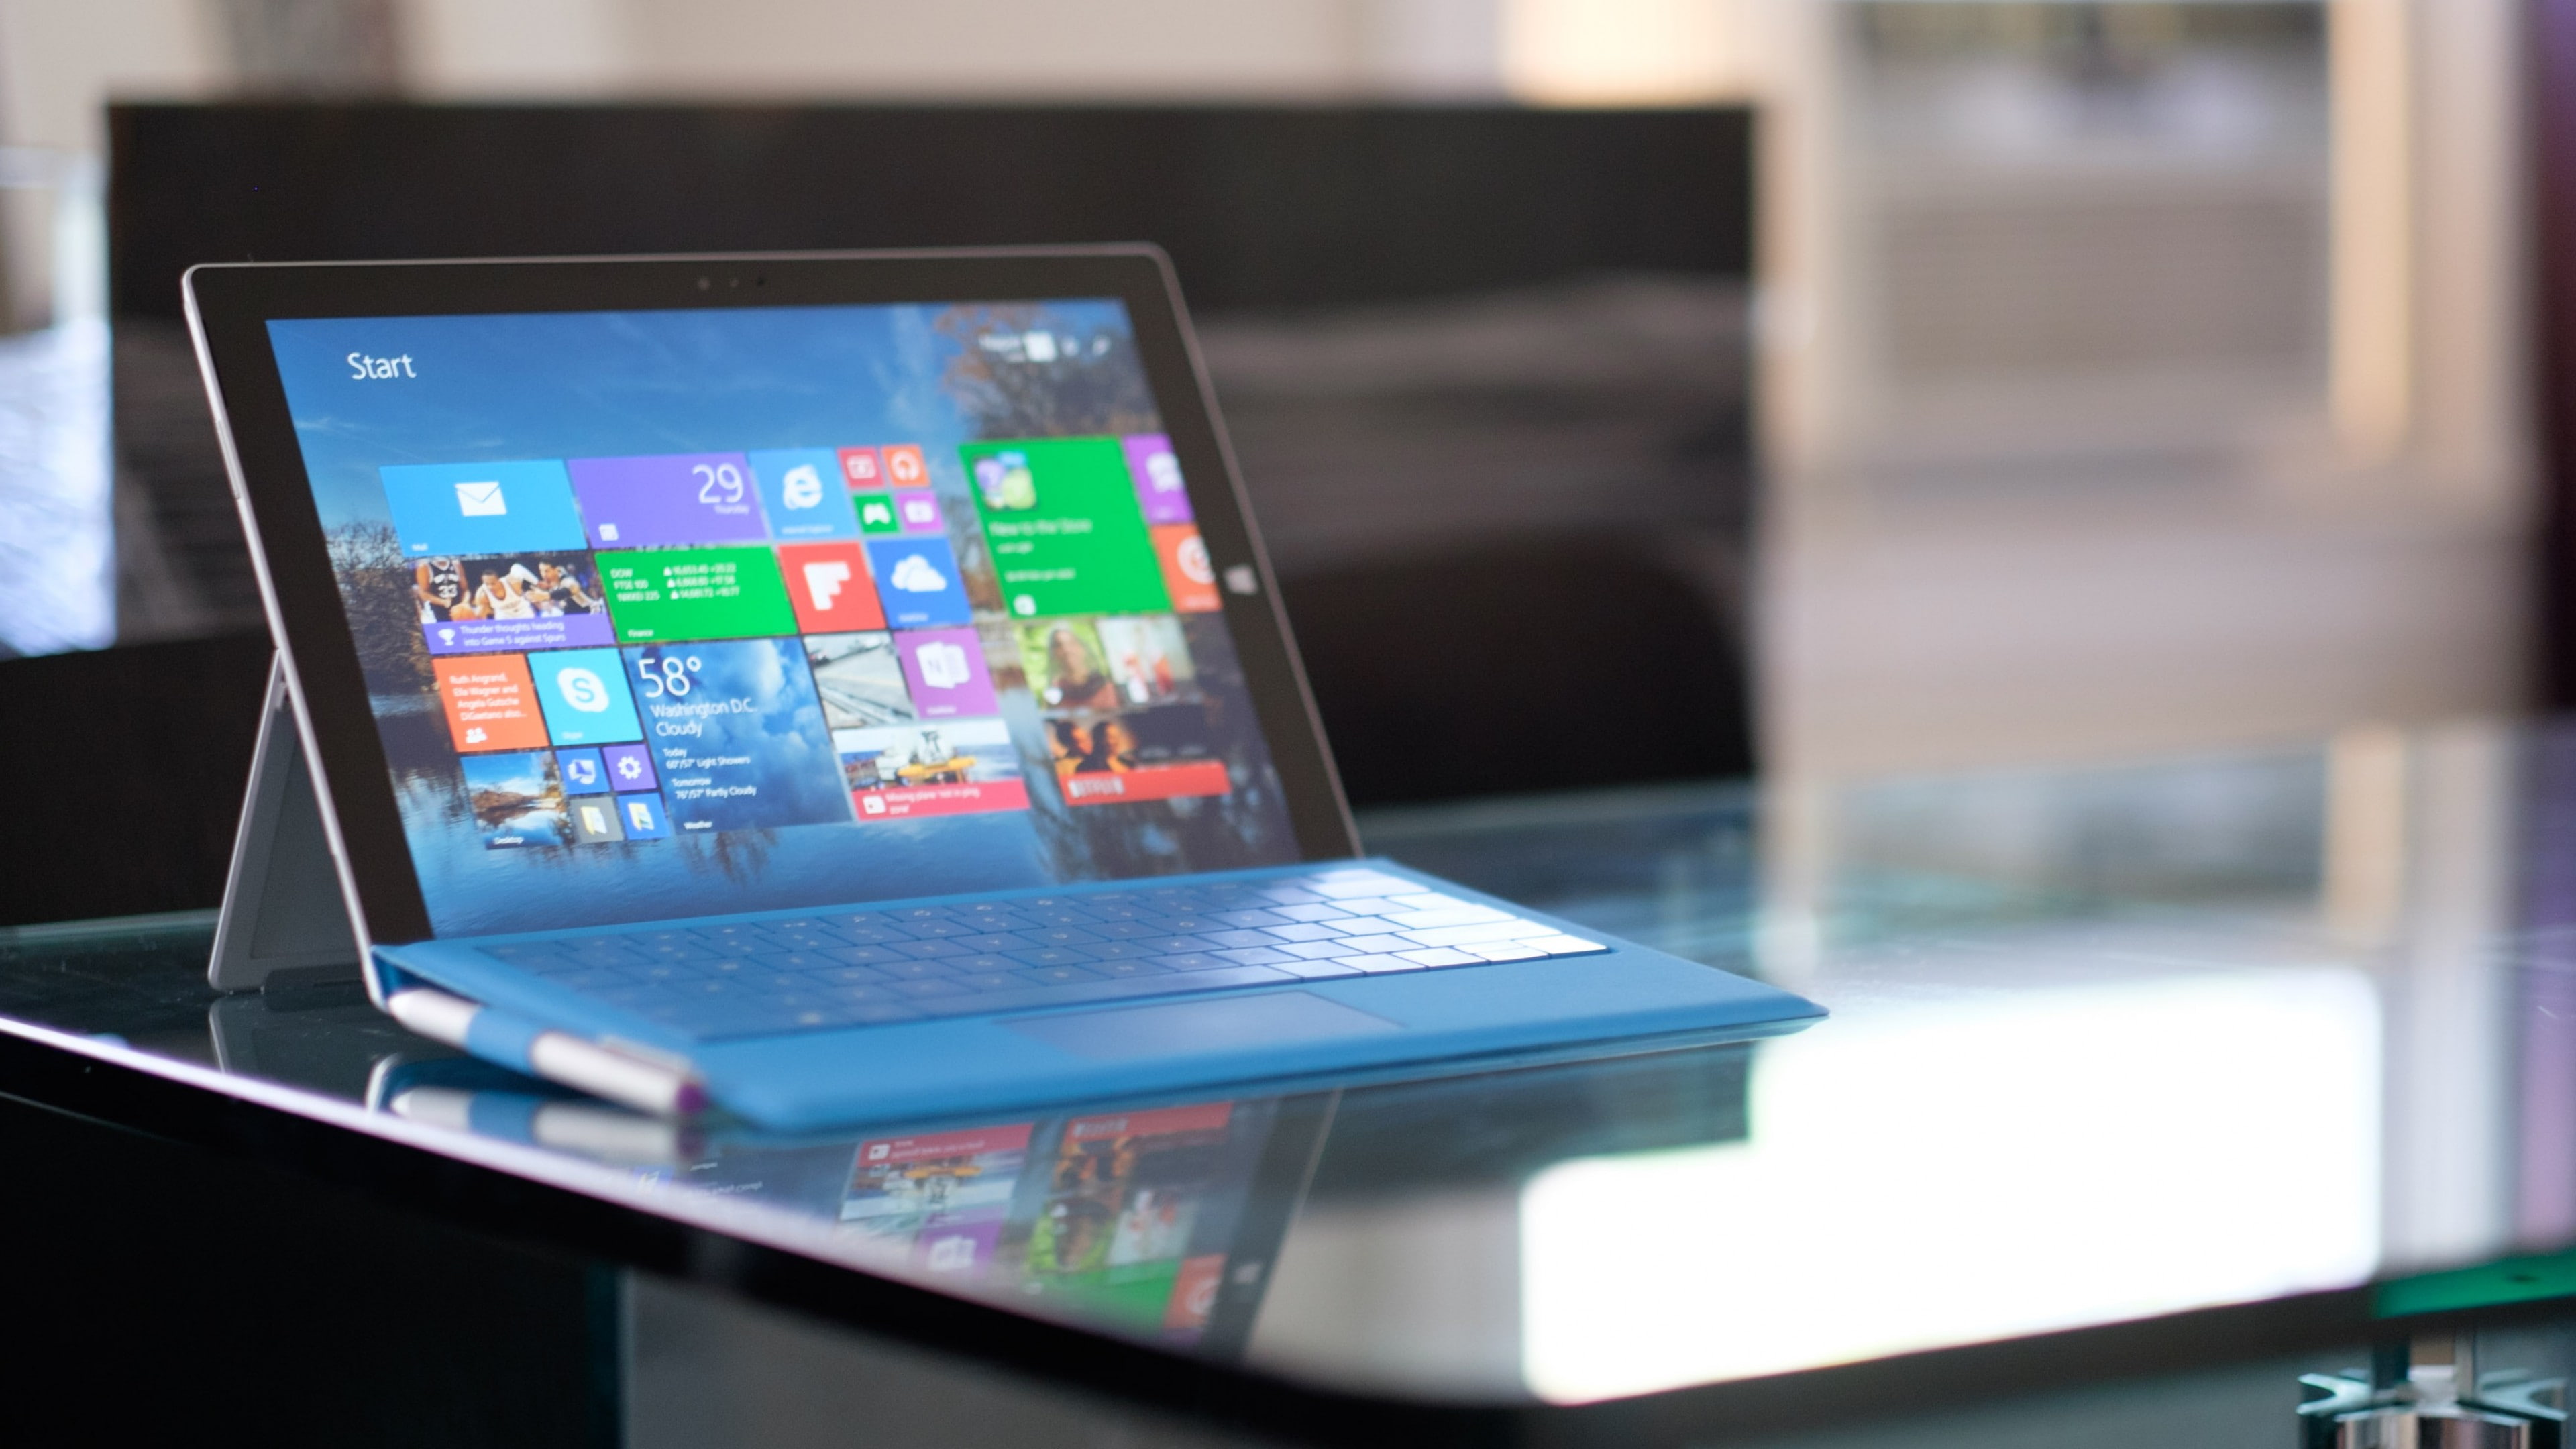 Black Windows Tablet Turned On, Microsoft Surface Pro - Microsoft Surface Pro 4 , HD Wallpaper & Backgrounds